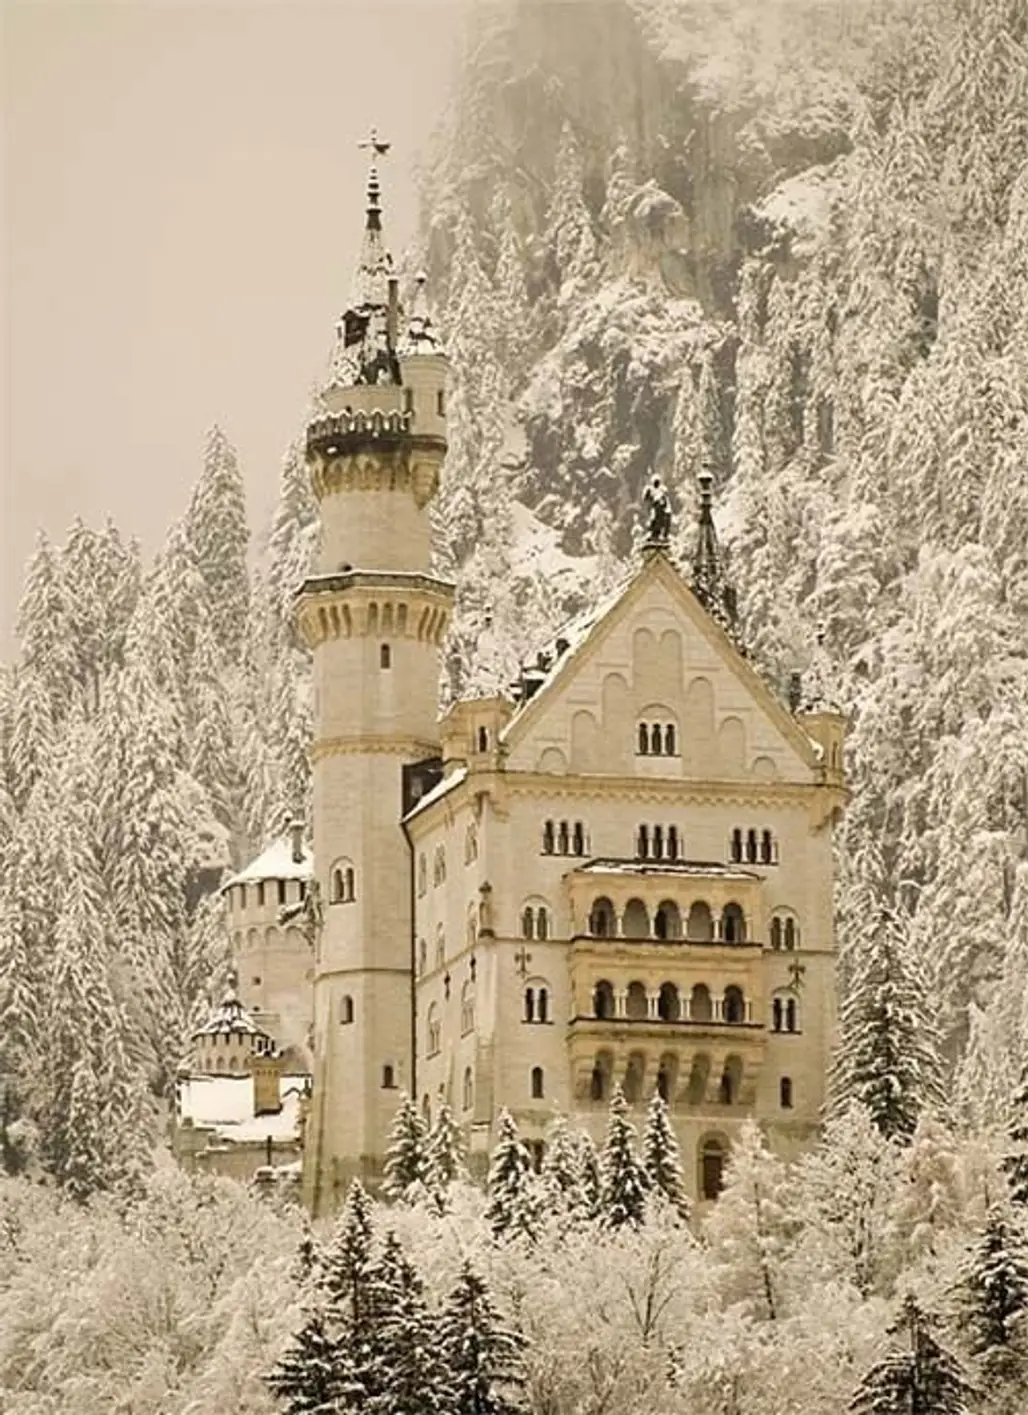 Neuschwanstein Castle, Germany